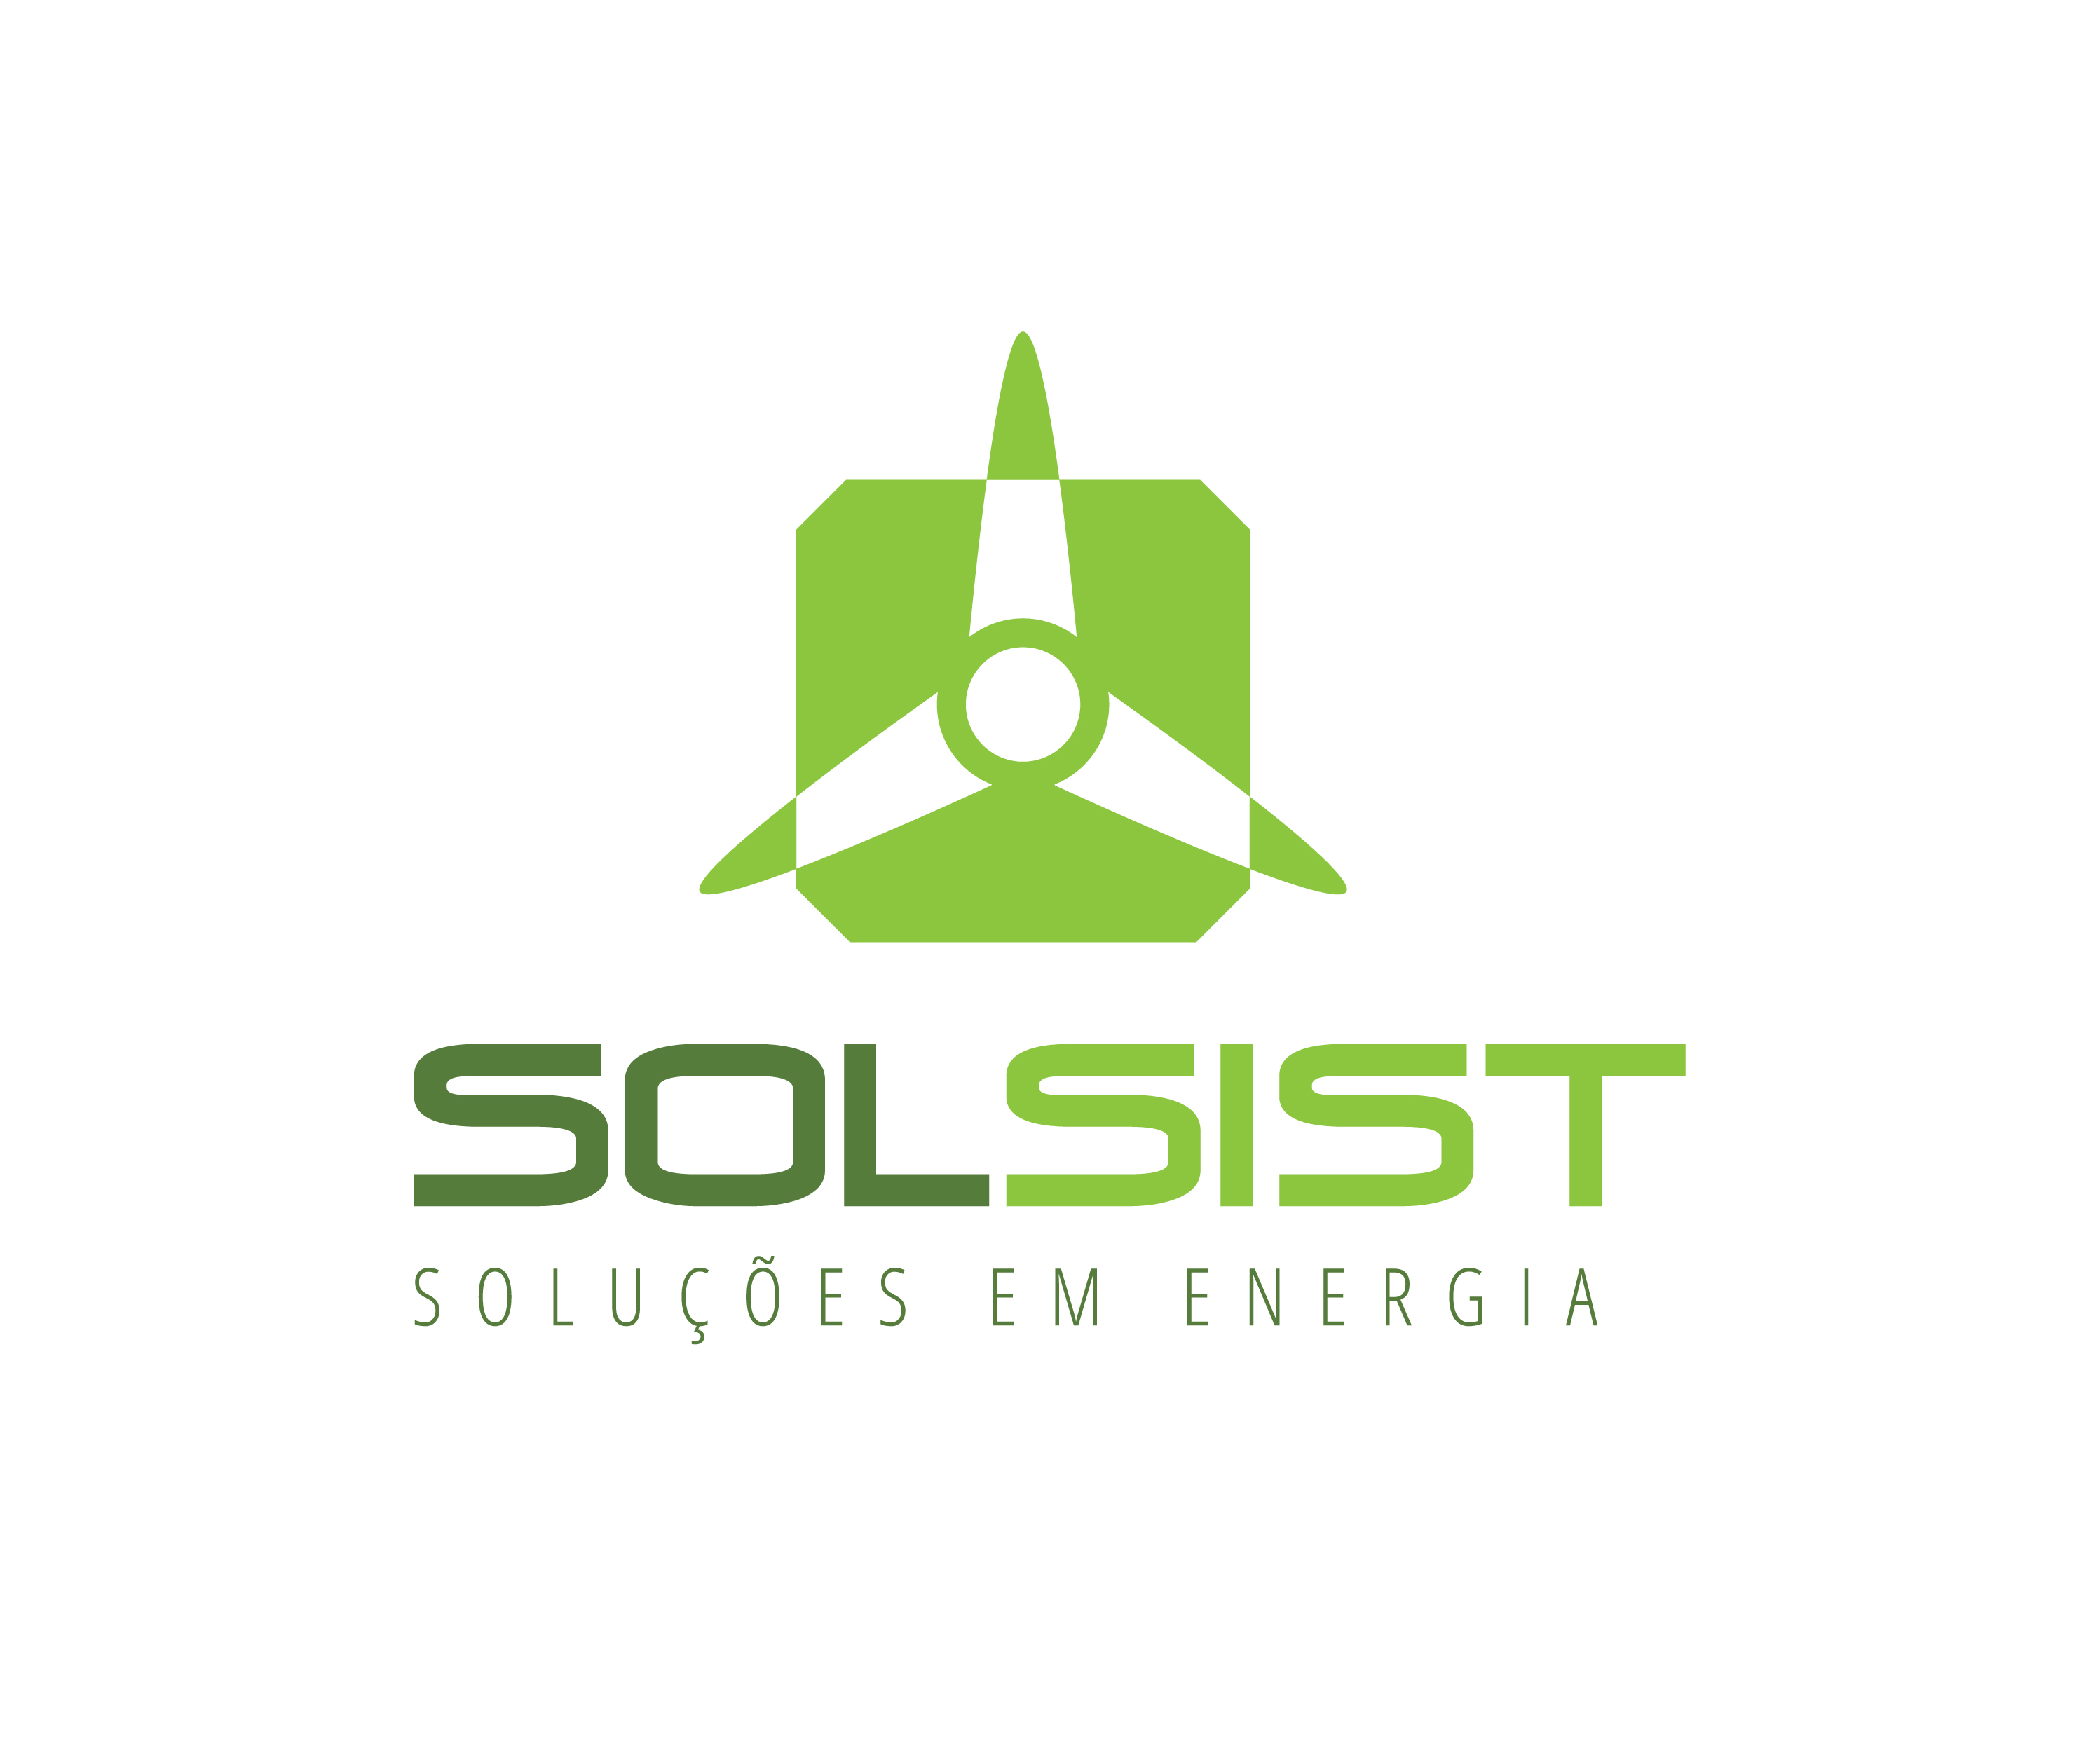 O curso de Projetista de Sistemas Fotovoltaicos da Solsist Energia já capacitou mais de 400 alunos com turmas recorrentes desde março de 2015 e já foi ministrado nos Estados de Minas Gerais, Espirito